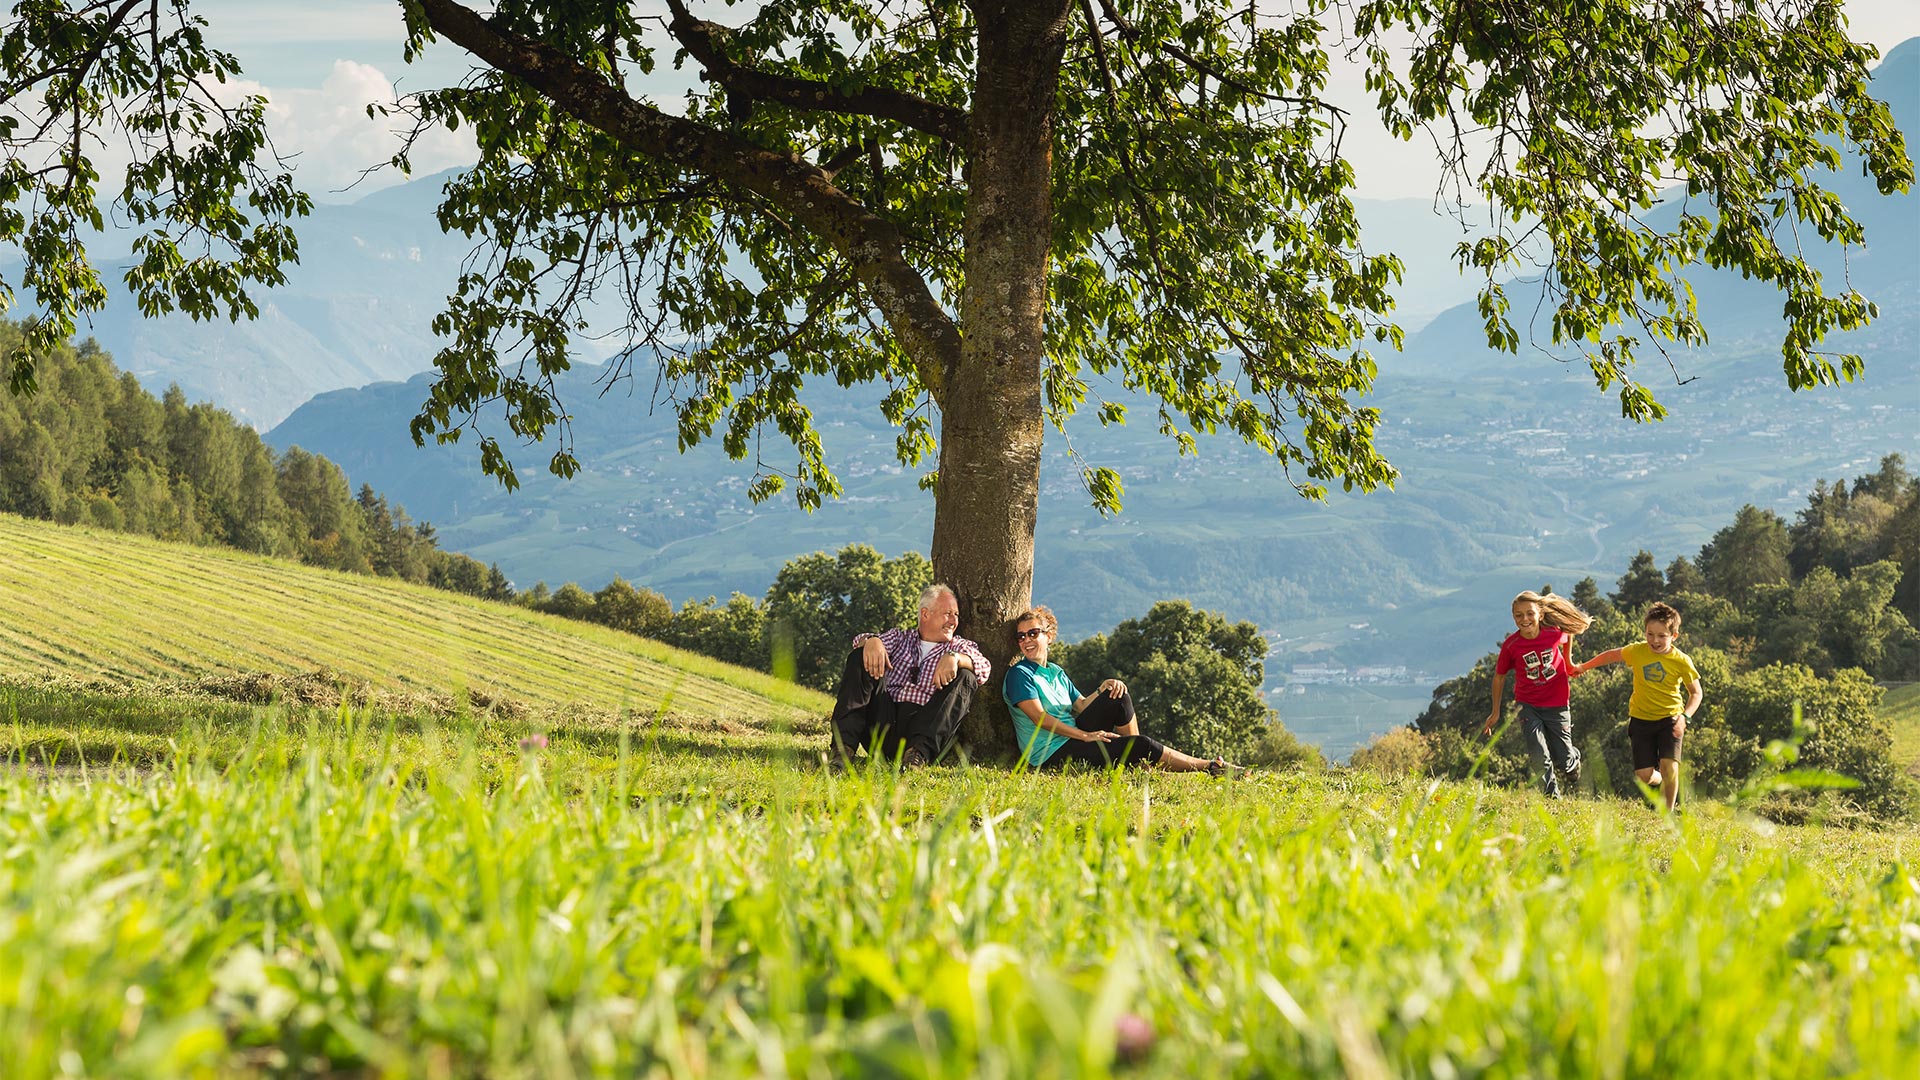 An einem sonnigen Tag auf einer Wiese in den Bozner Bergen ruht sich ein älteres Ehepaar unter einem Baum aus, während seine Enkelkinder in der Natur spielen. 